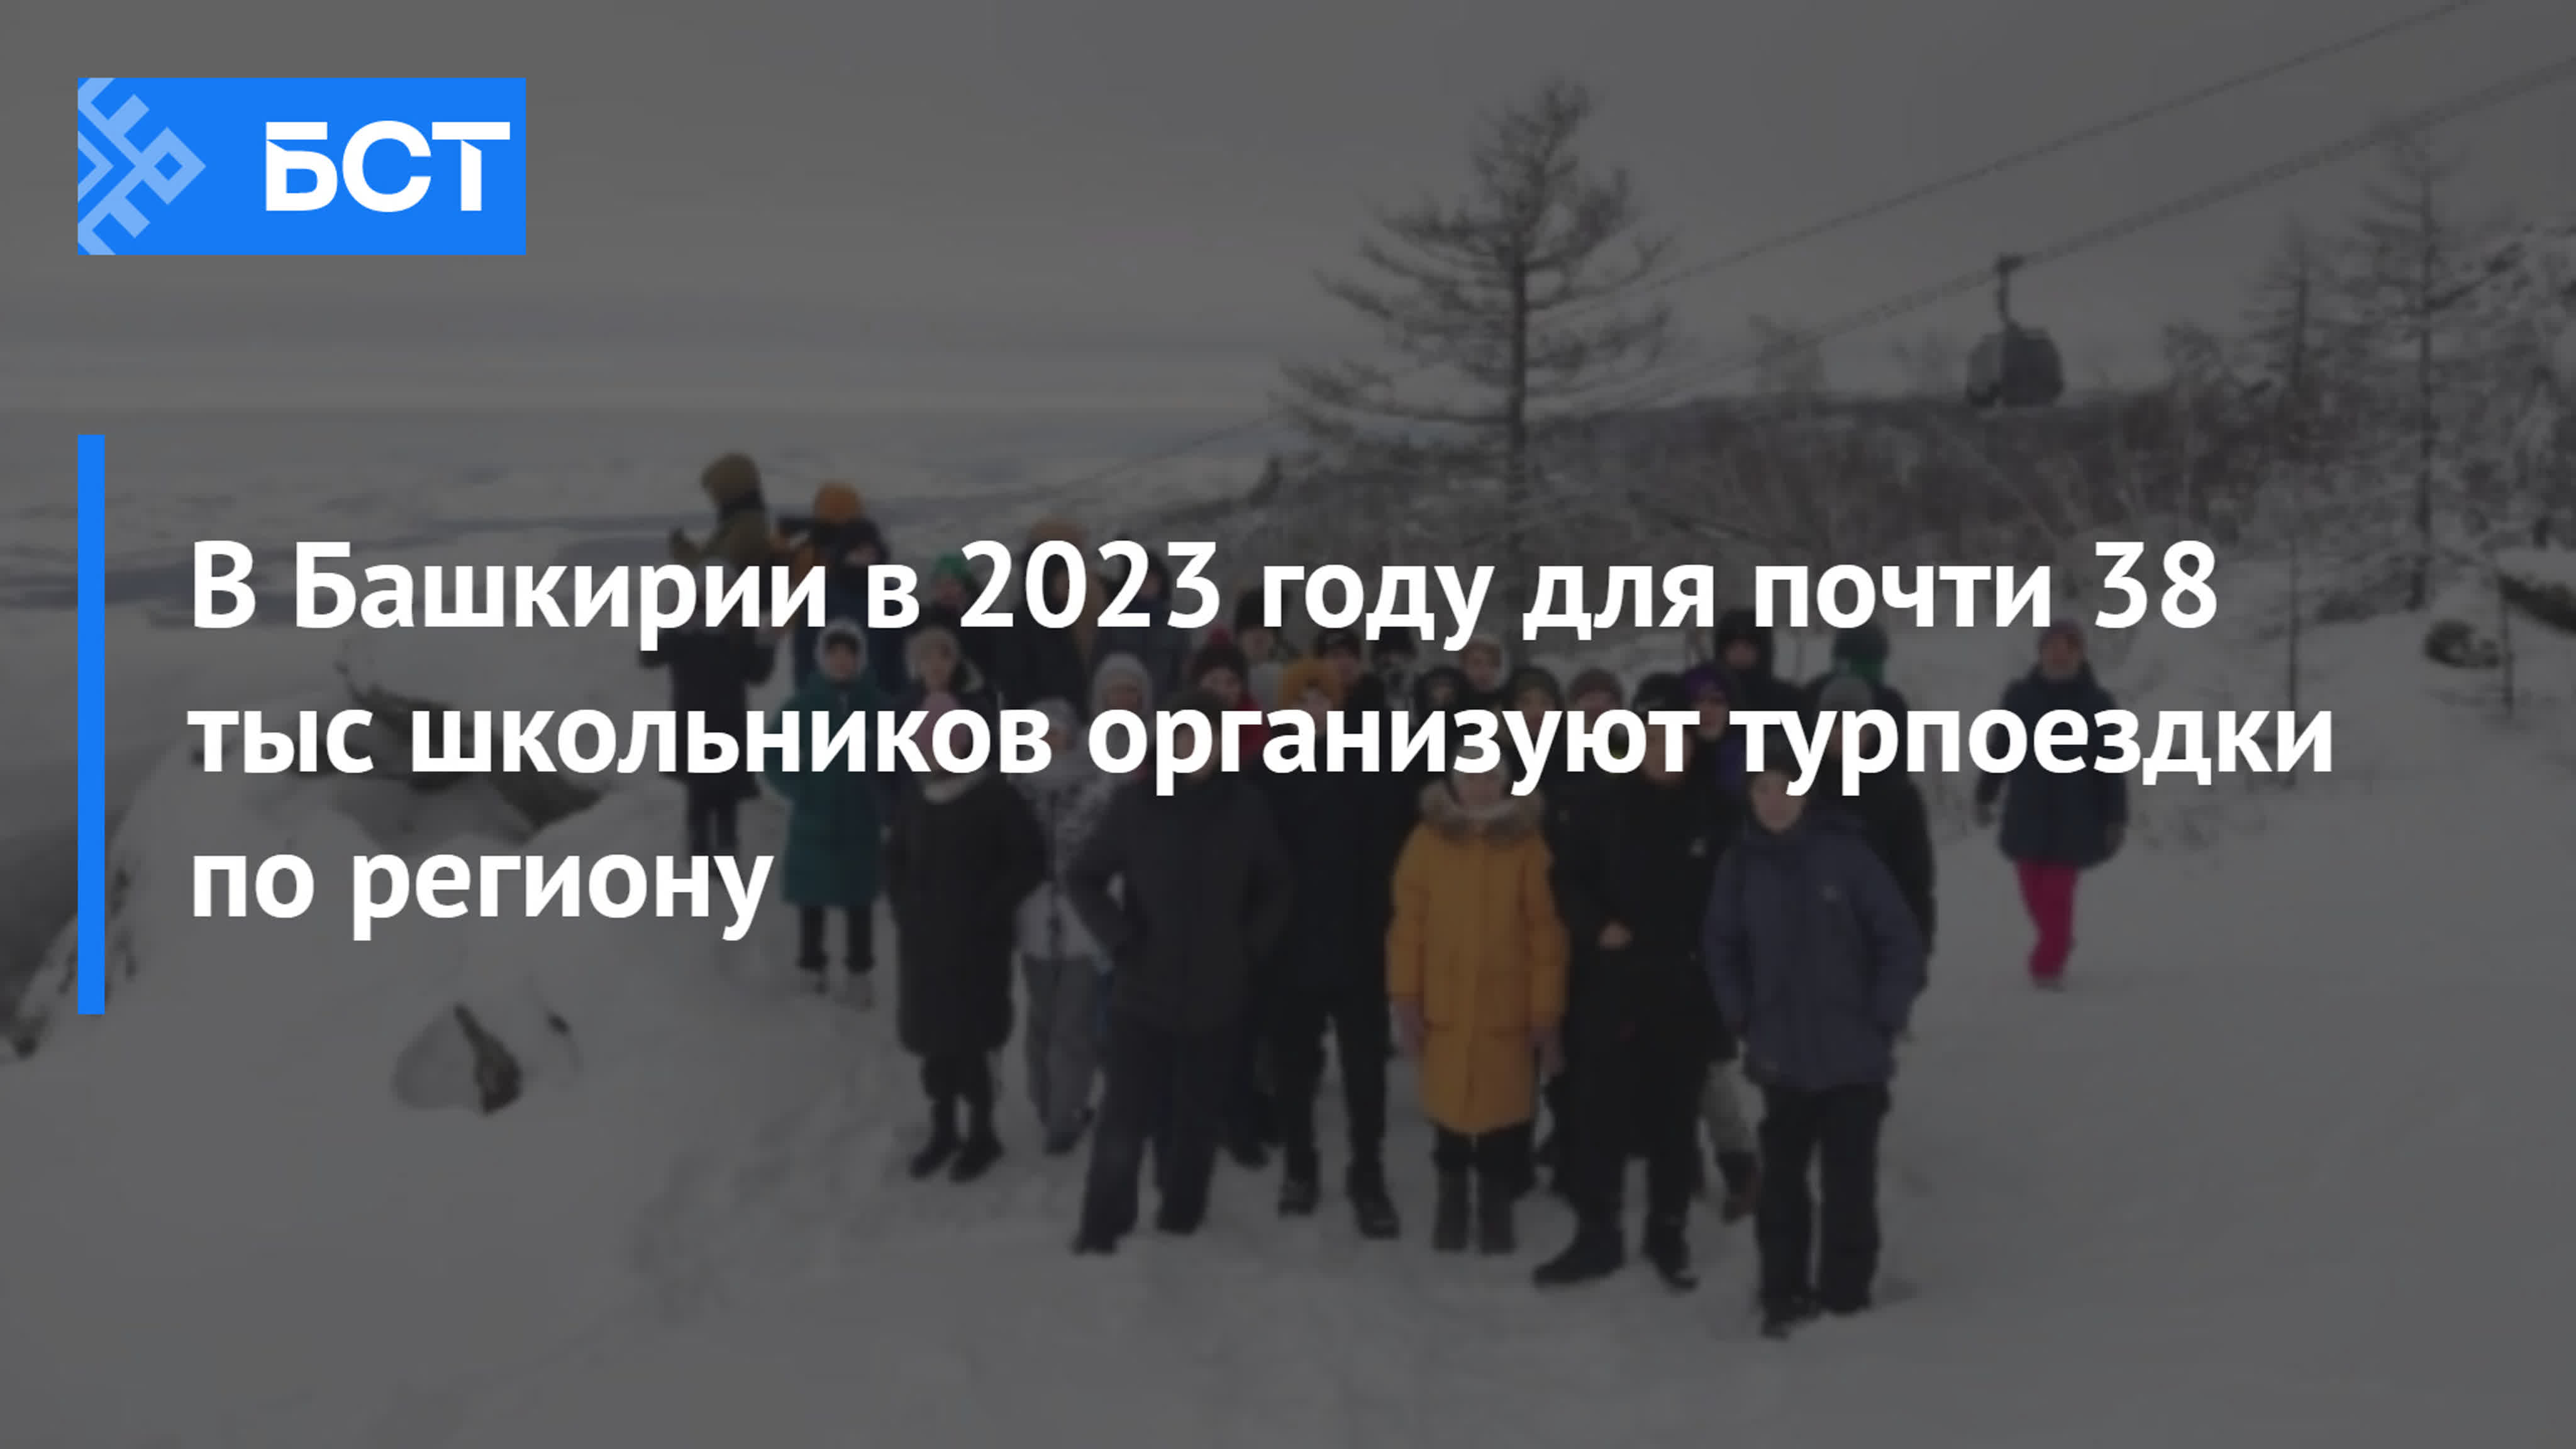 Выходные 2023 башкортостан. Год добрых дел в Башкирии 2023. Лето в Башкортостане 2023.